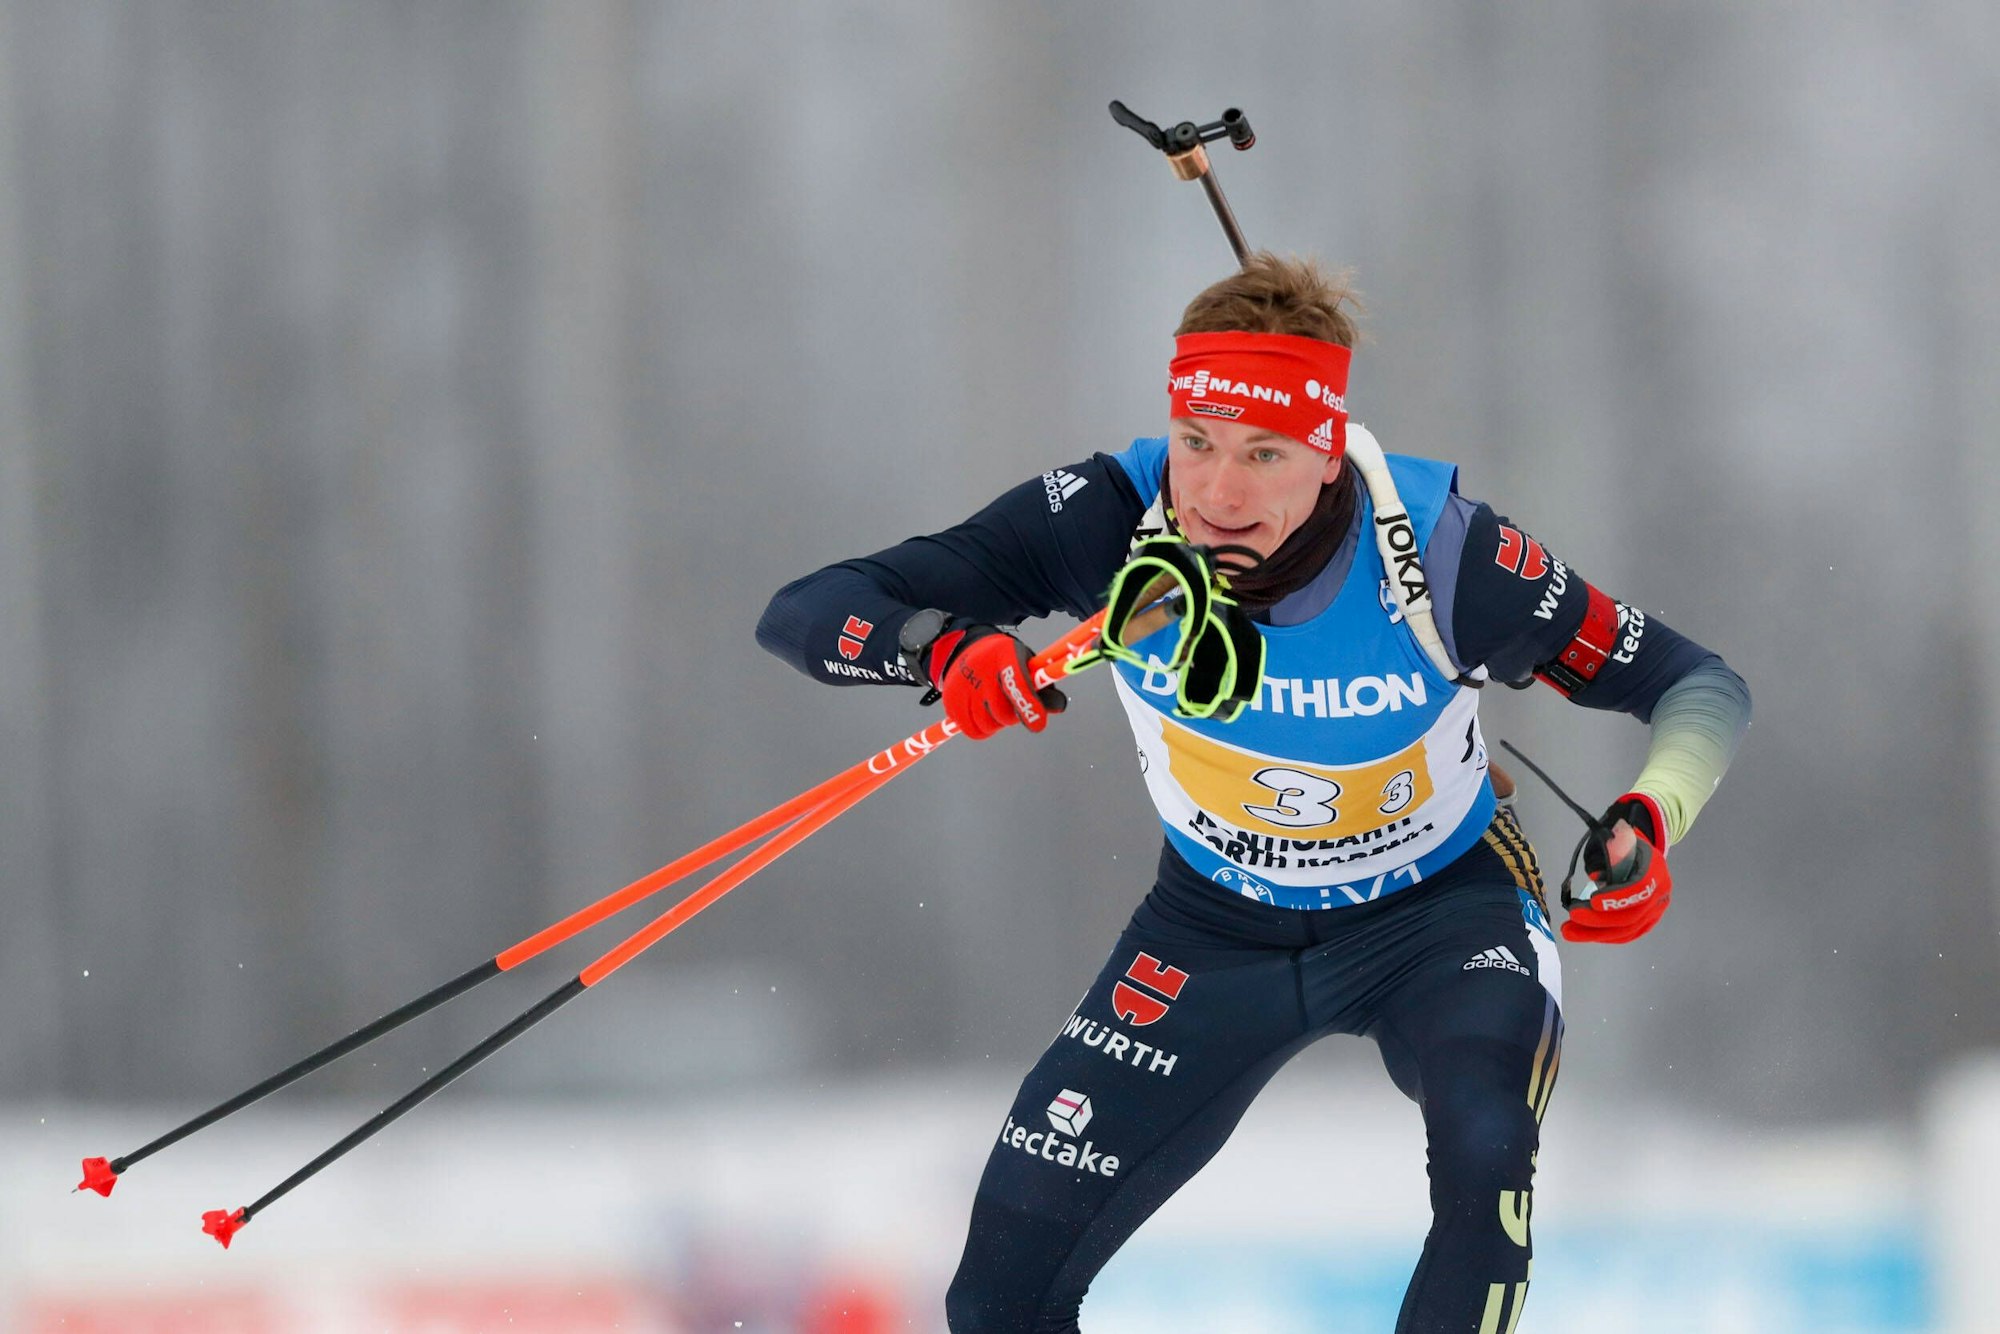 Benedikt Doll in Aktion bei der Biathlon-Staffel über 4 x 7,5 Kilometer.